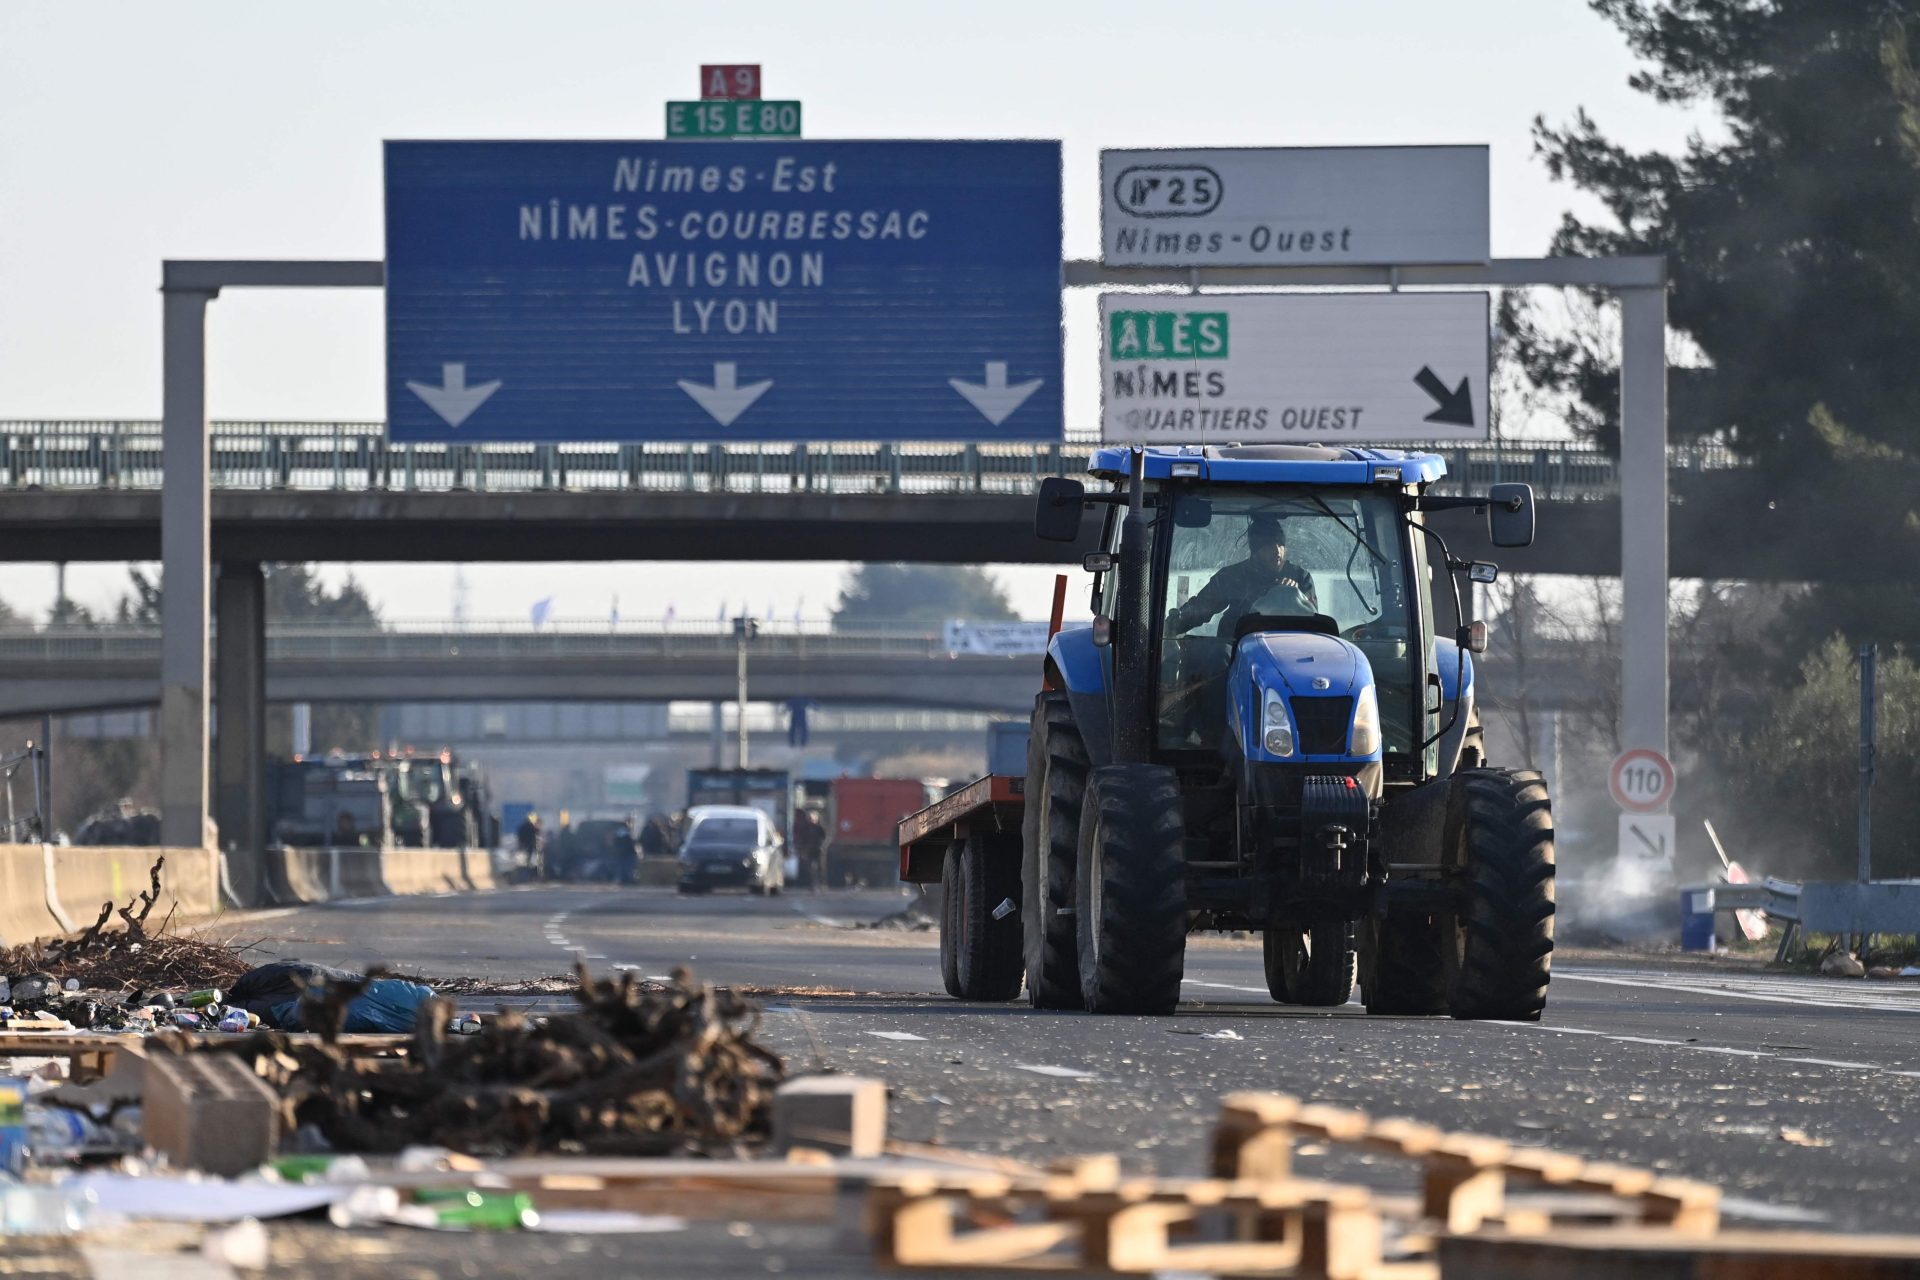 Les entreprises portugaises subissent des pertes importantes en raison des confinements en France